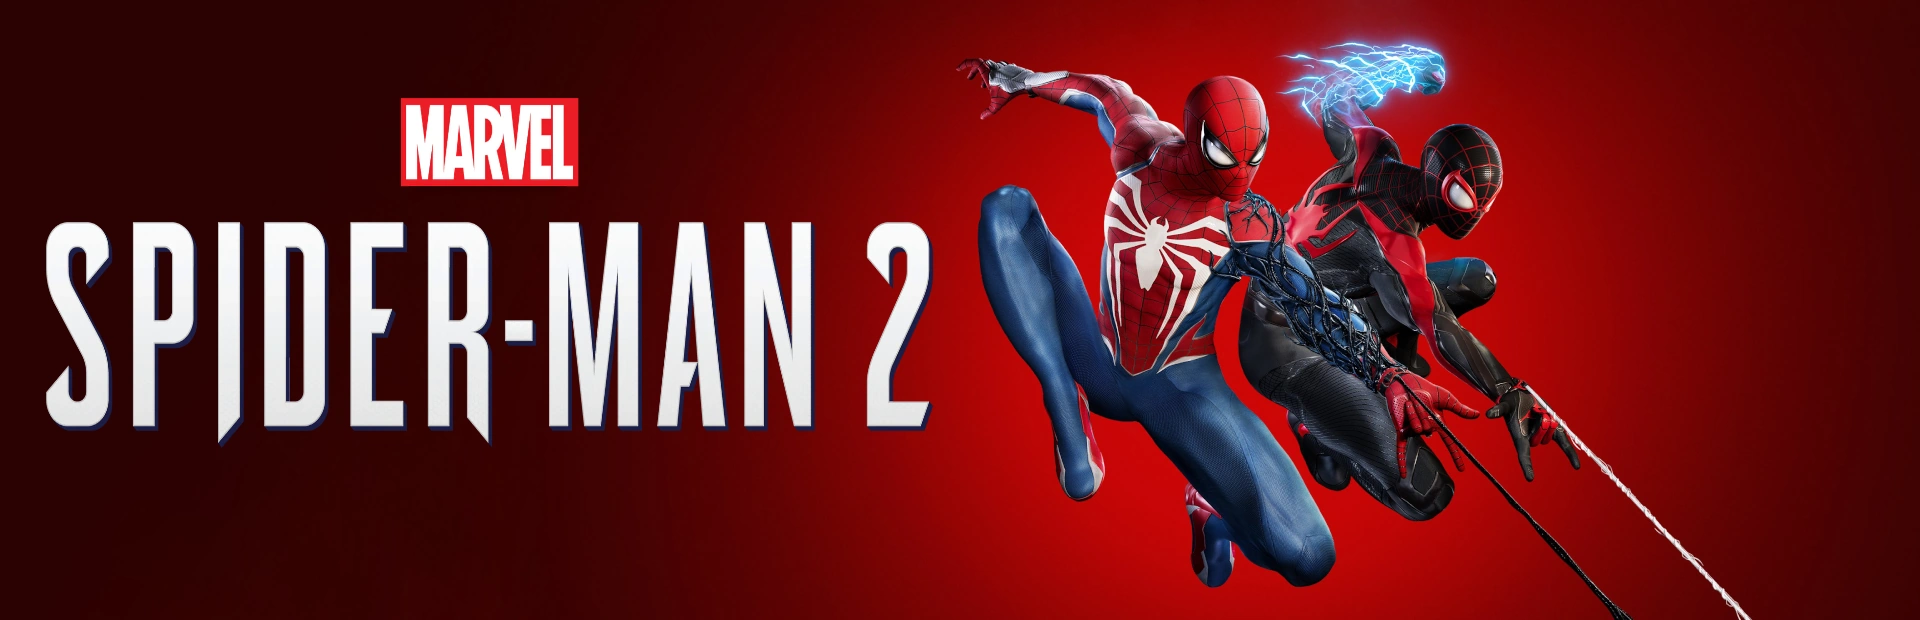 دانلود بازی Marvels Spider-Man 2 برای کامپیوتر | گیمباتو